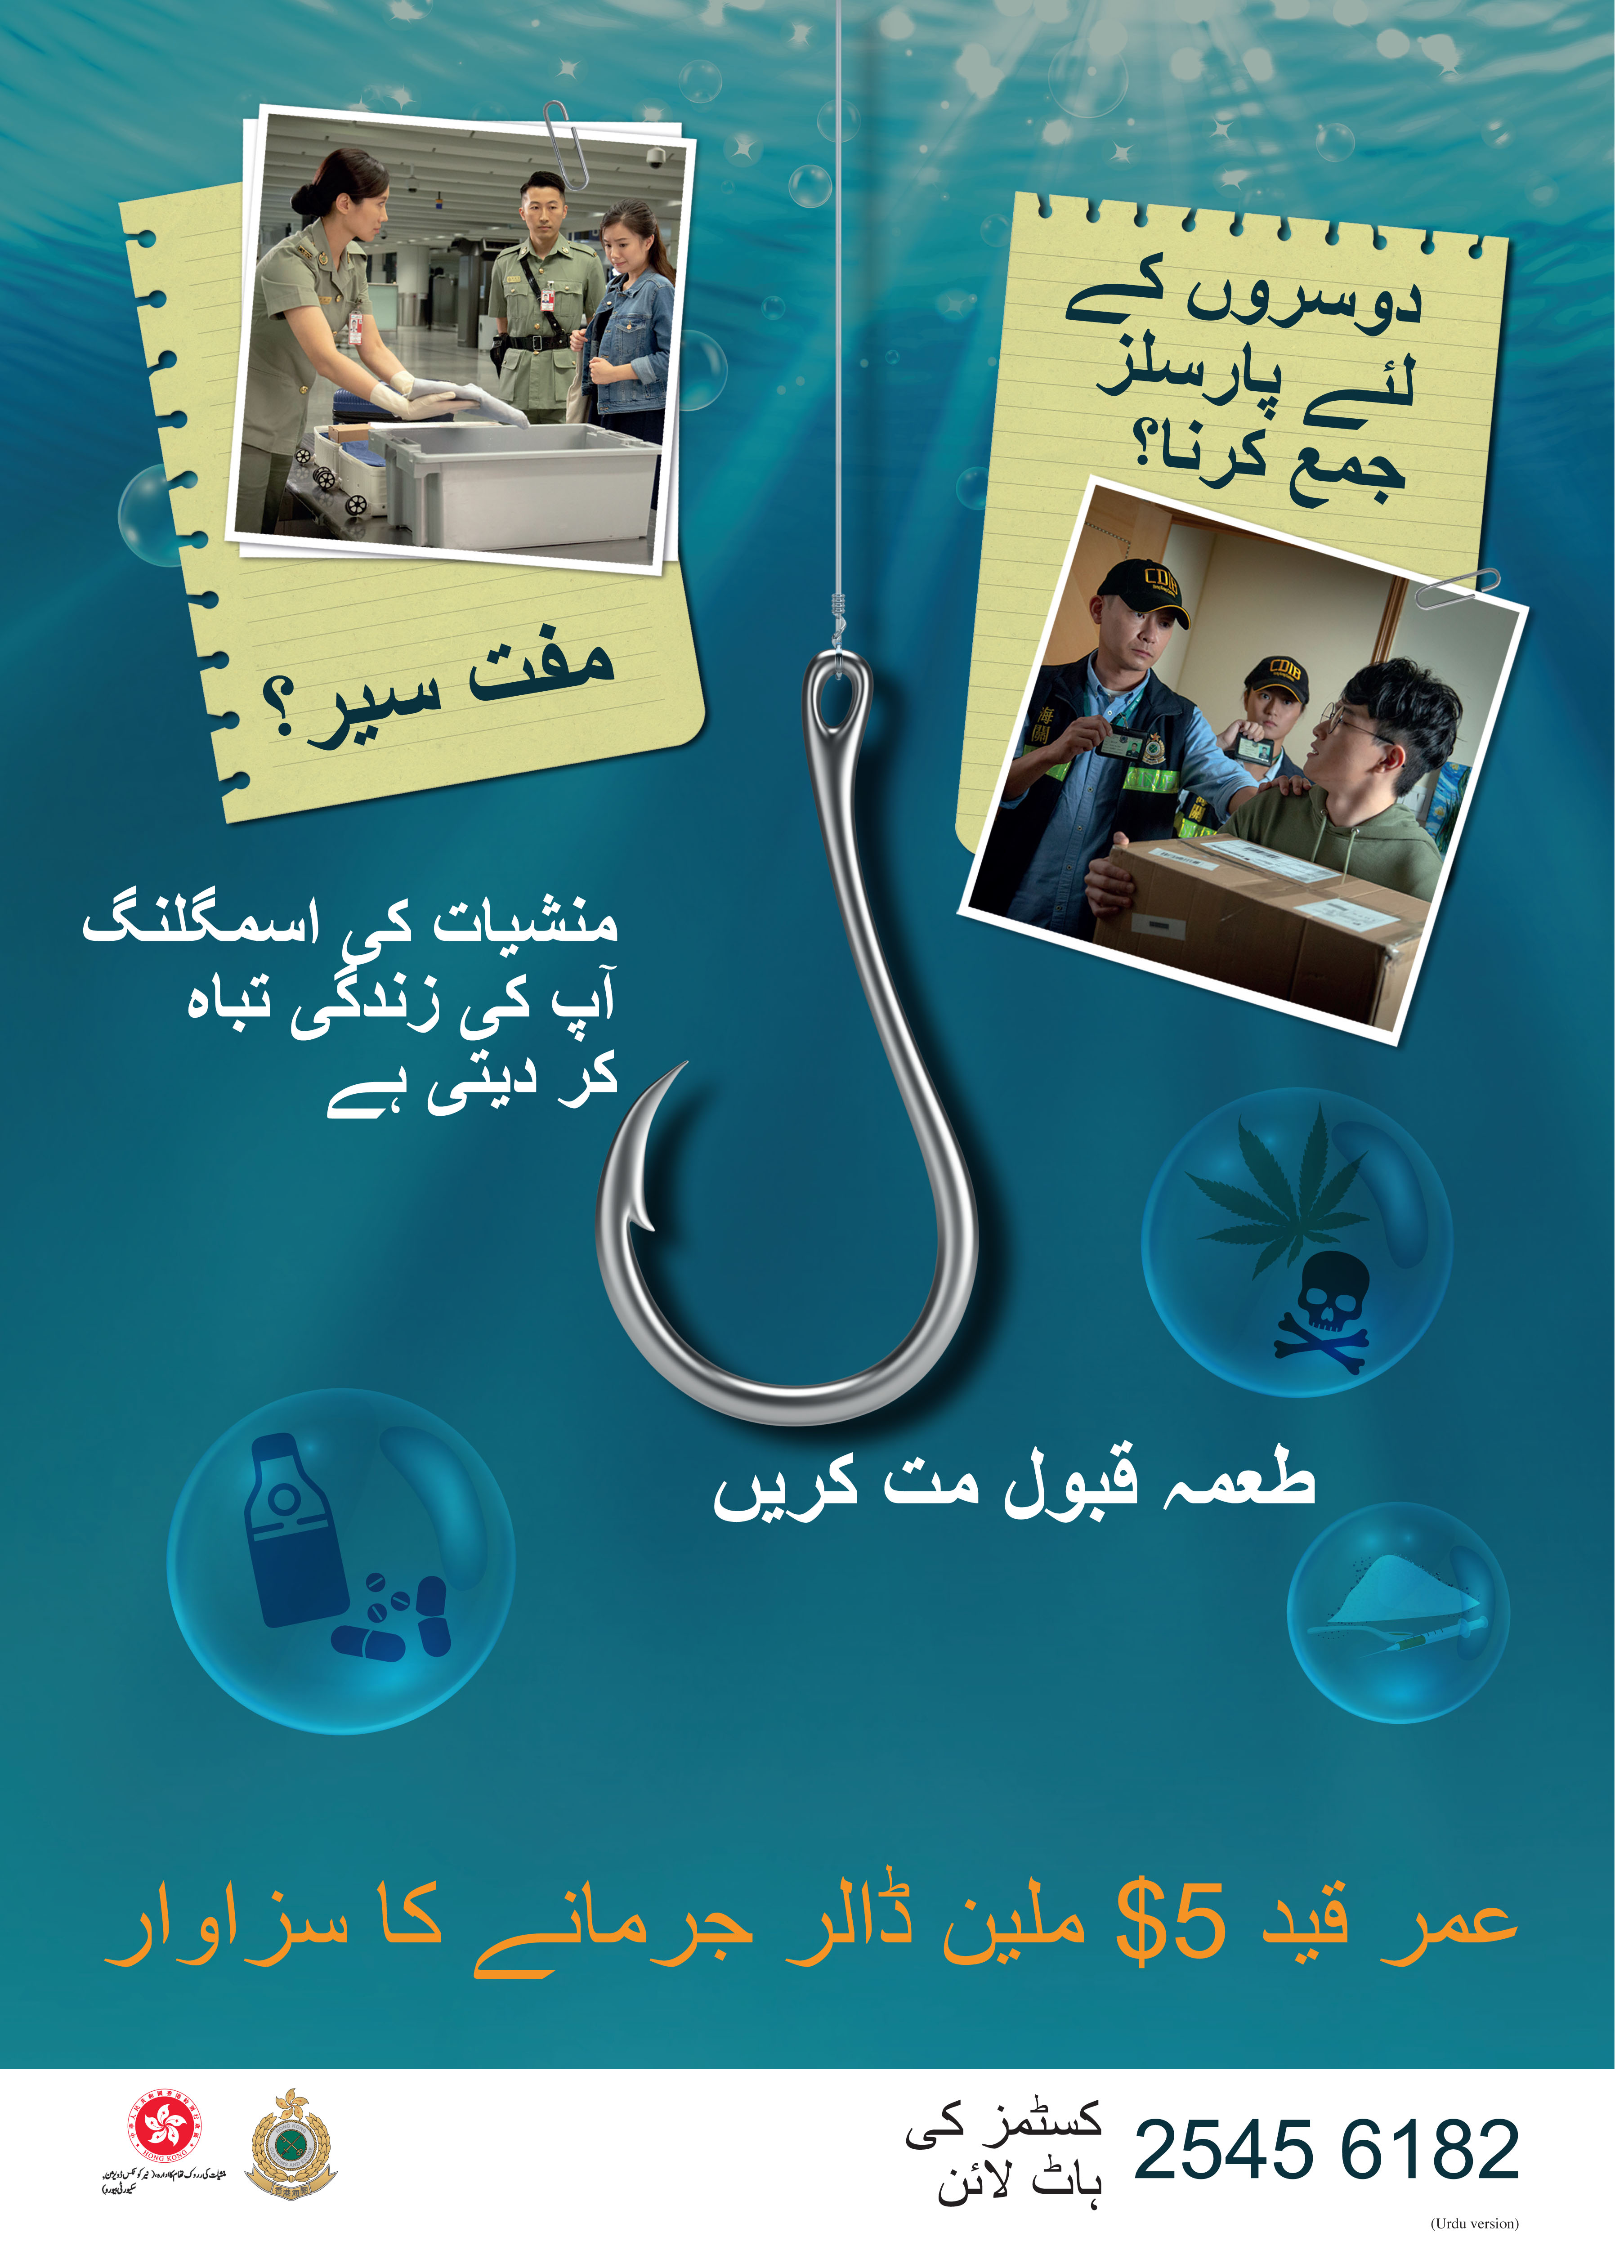 禁毒海报「贩毒诱害，切勿上钓」－巴基斯坦文版本